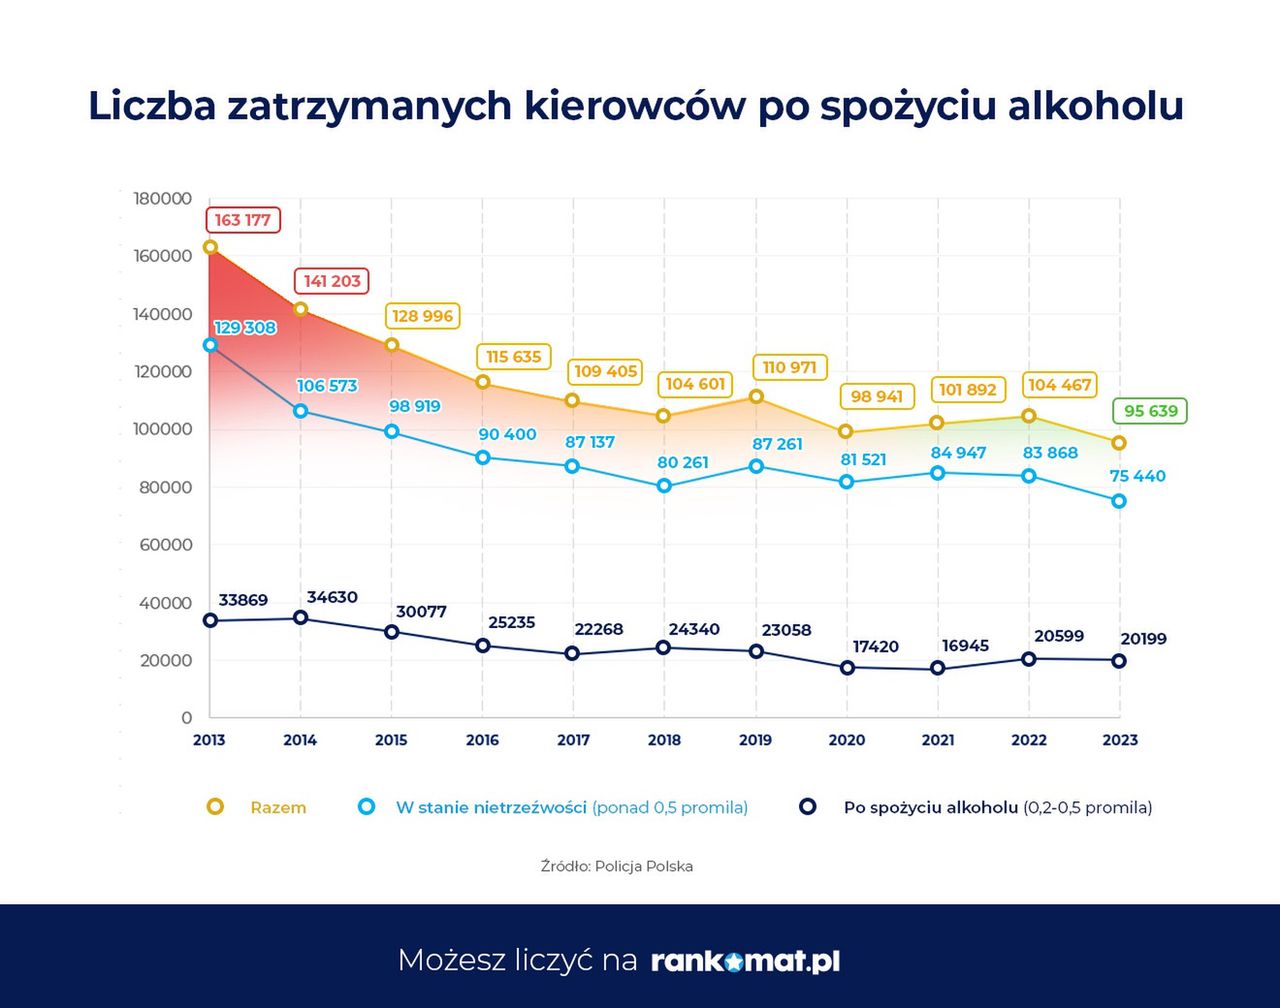 Liczba zatrzymanych kierowców po spożyciu alkoholu w Polsce